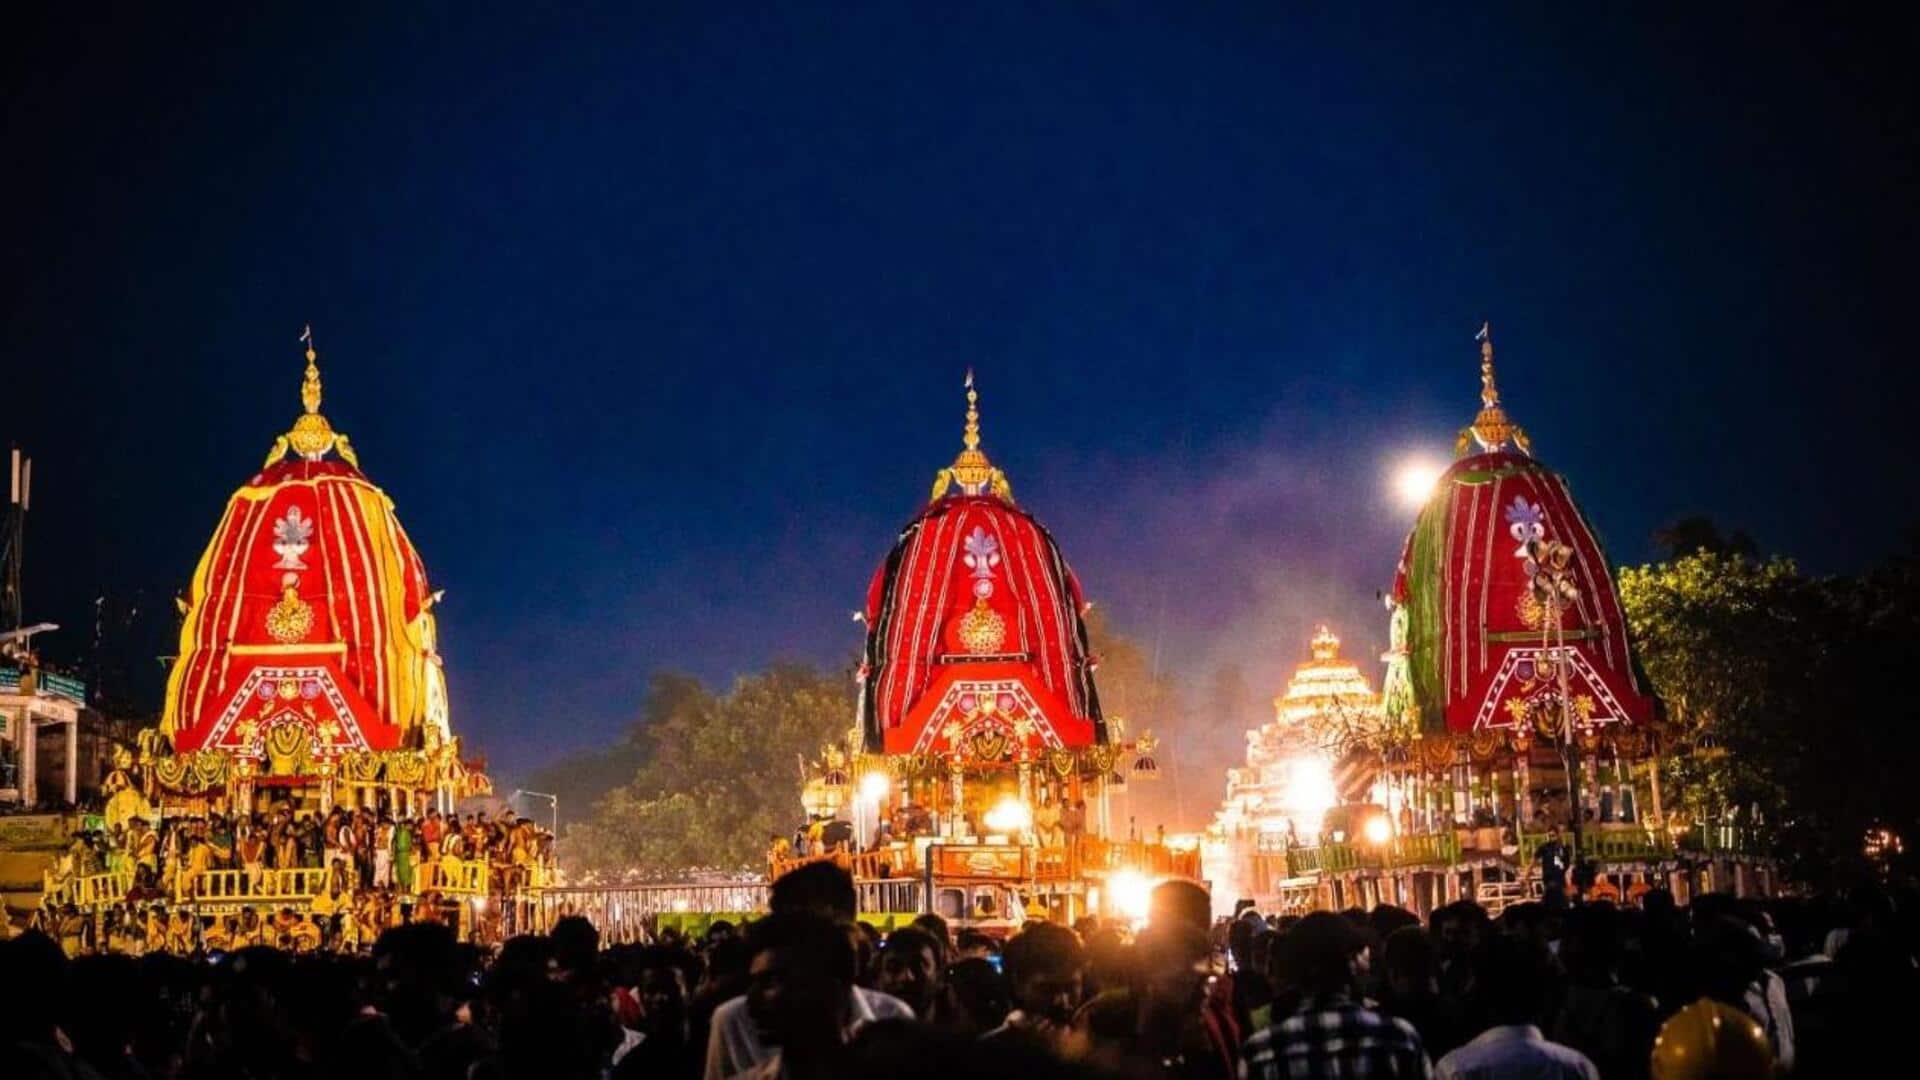 ओडिशा: पुरी में भगवान जगन्नाथ की चंदन यात्रा के दौरान पटाखों में विस्फोट, 1 की मौत